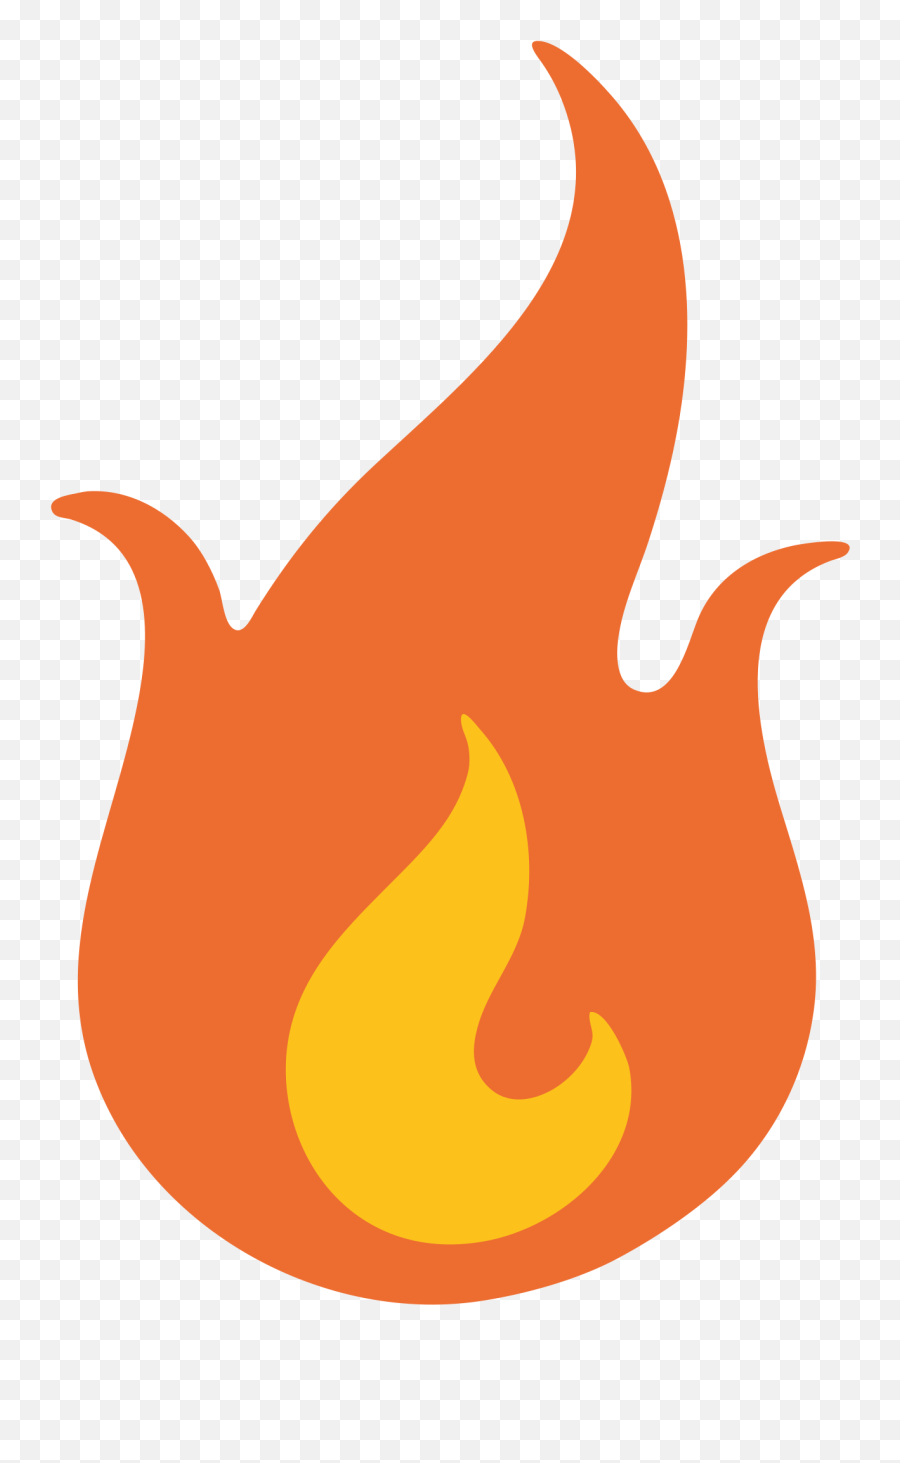 Flame Clipart Emoji - Transparent Fire Emoji Png Full Size Fire Emoji Png,Sunglasses Emoji Snapchat